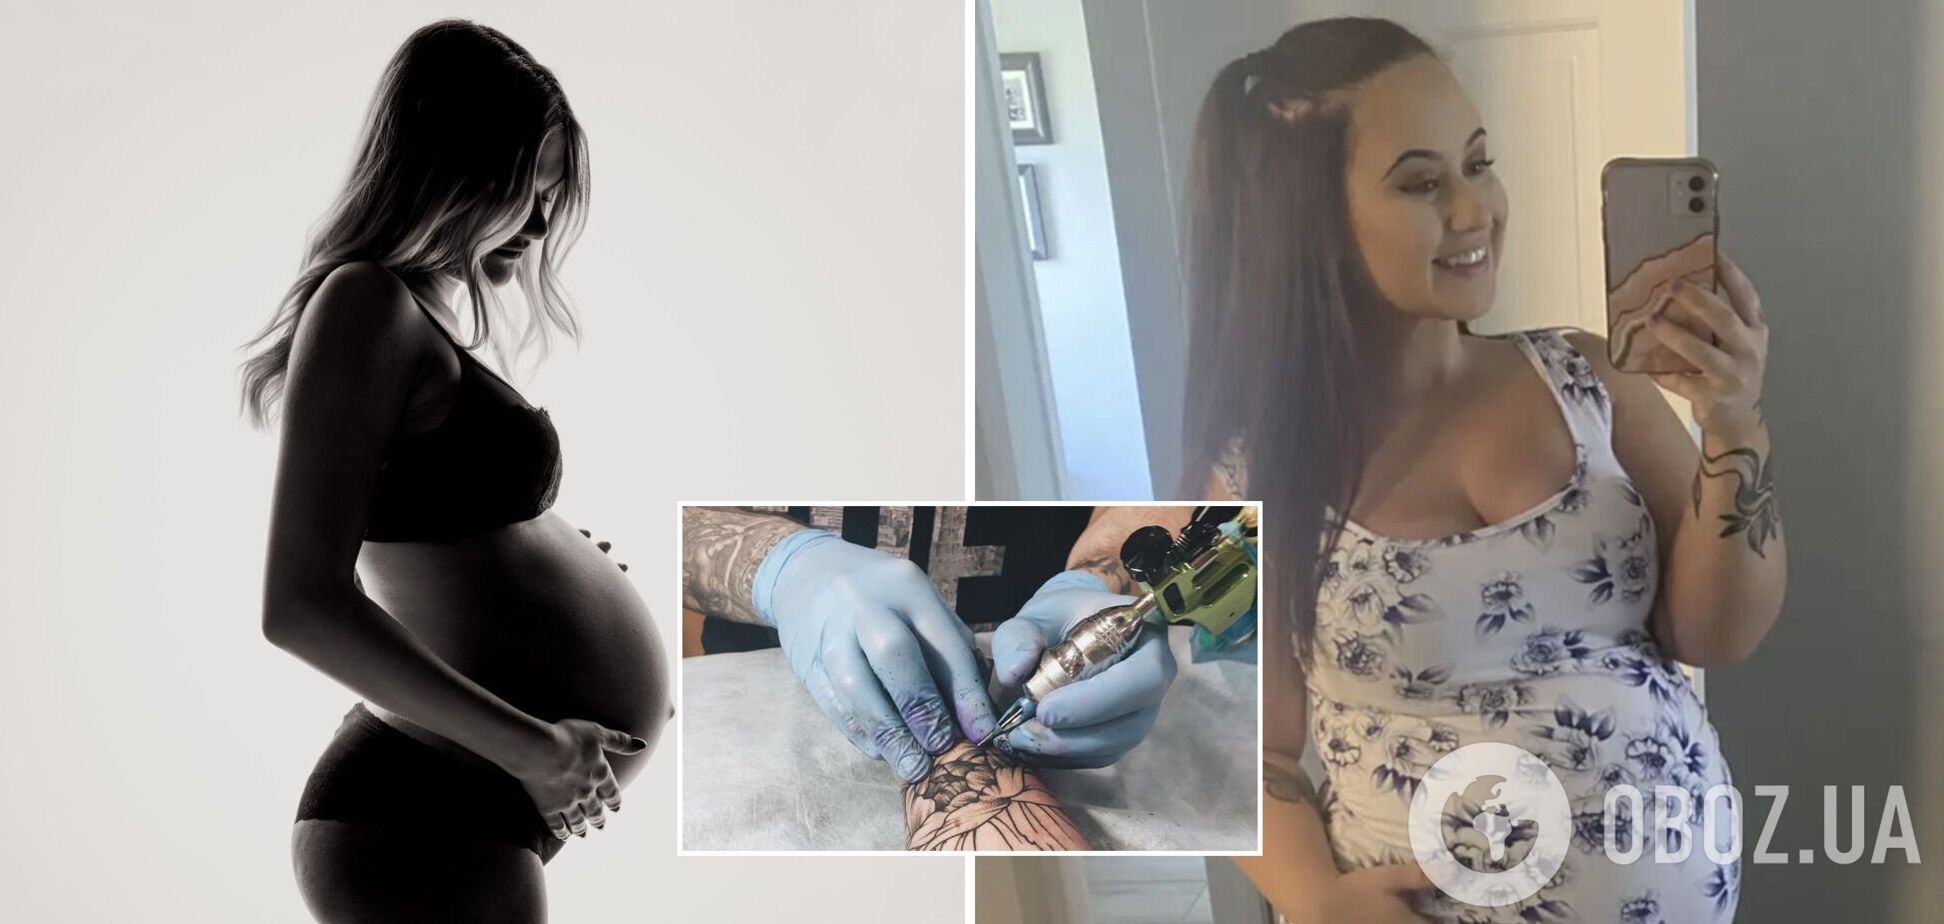 Беременная женщина рассказала, как получила проблемы из-за тату